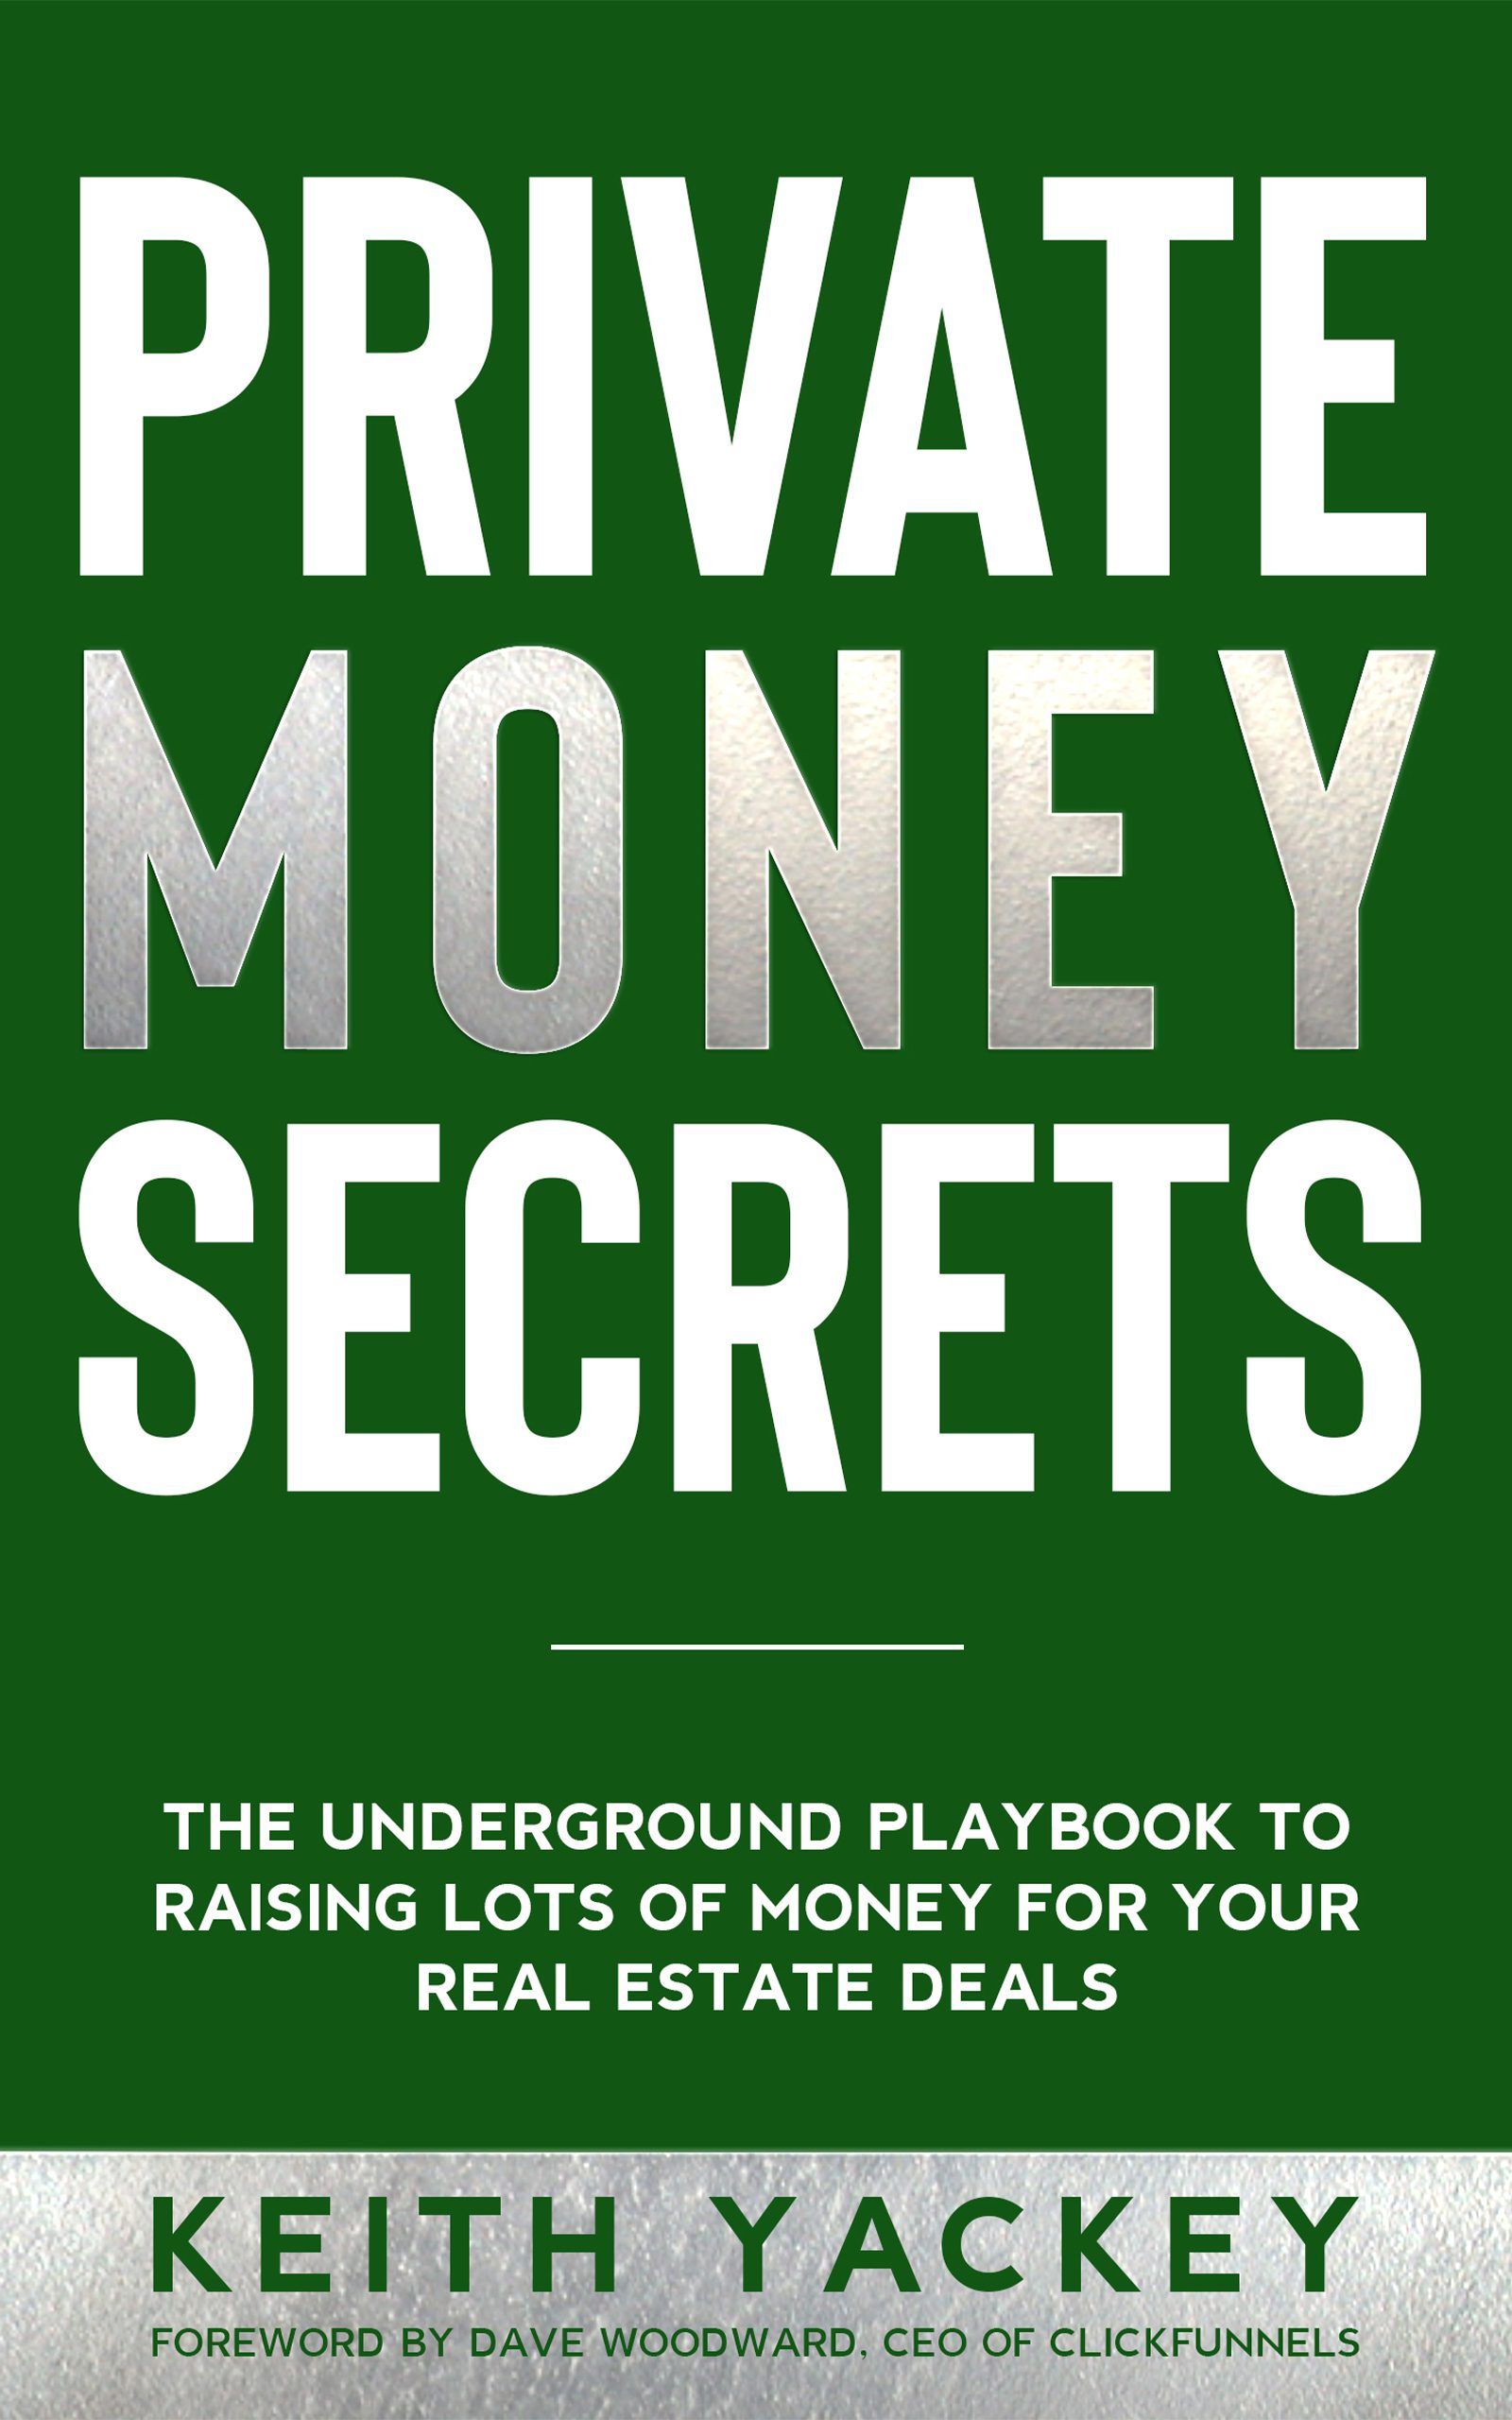 Private Money Secrets